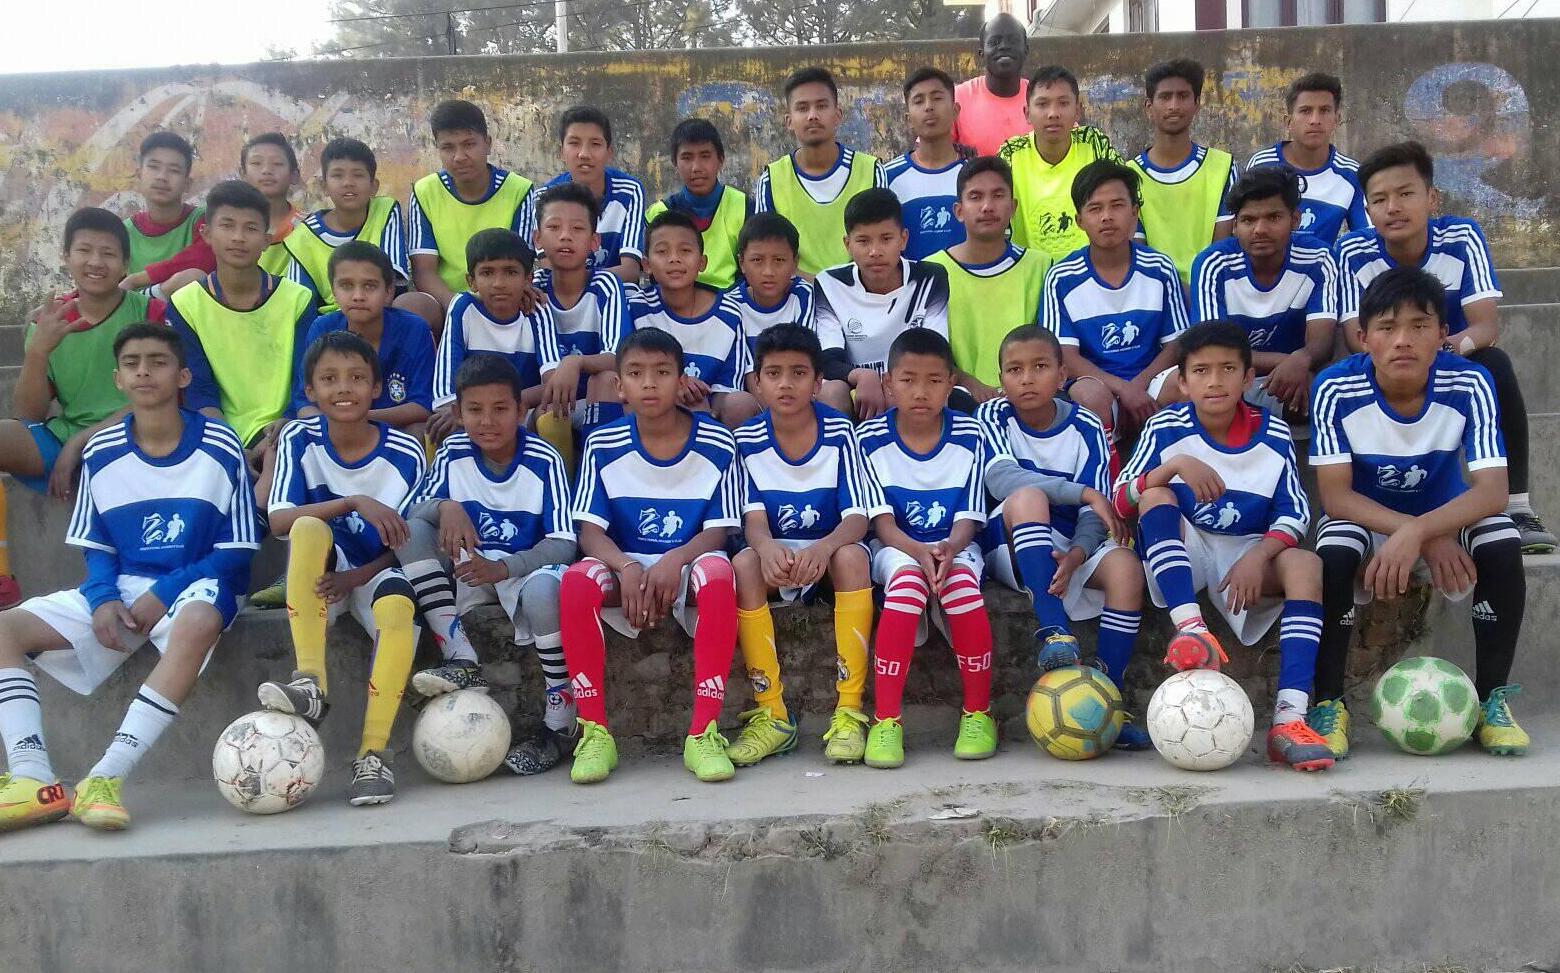 カトマンズの学校のサッカークラブにサッカーボールを寄付！We donated soccer balls to the Kathmandu school